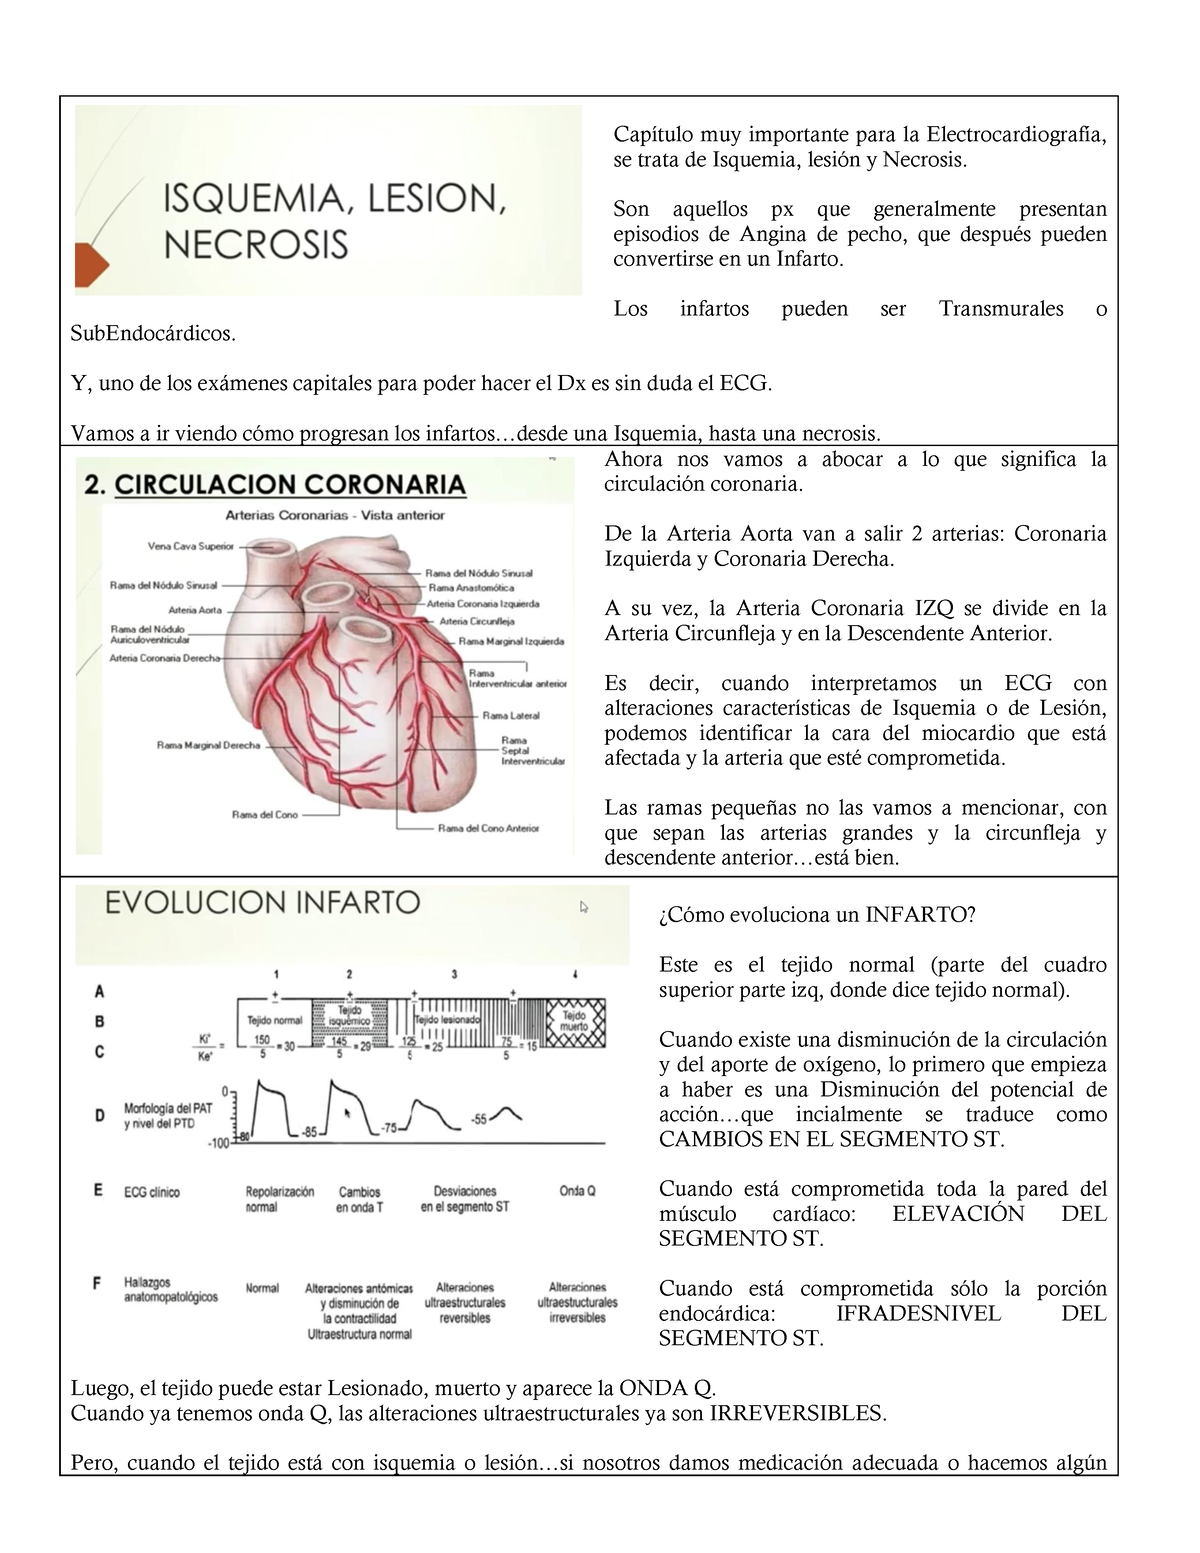 Isquemia Lesión Y Necrosis Capítulo Muy Importante Para La Electrocardiografía Se Trata De 9133